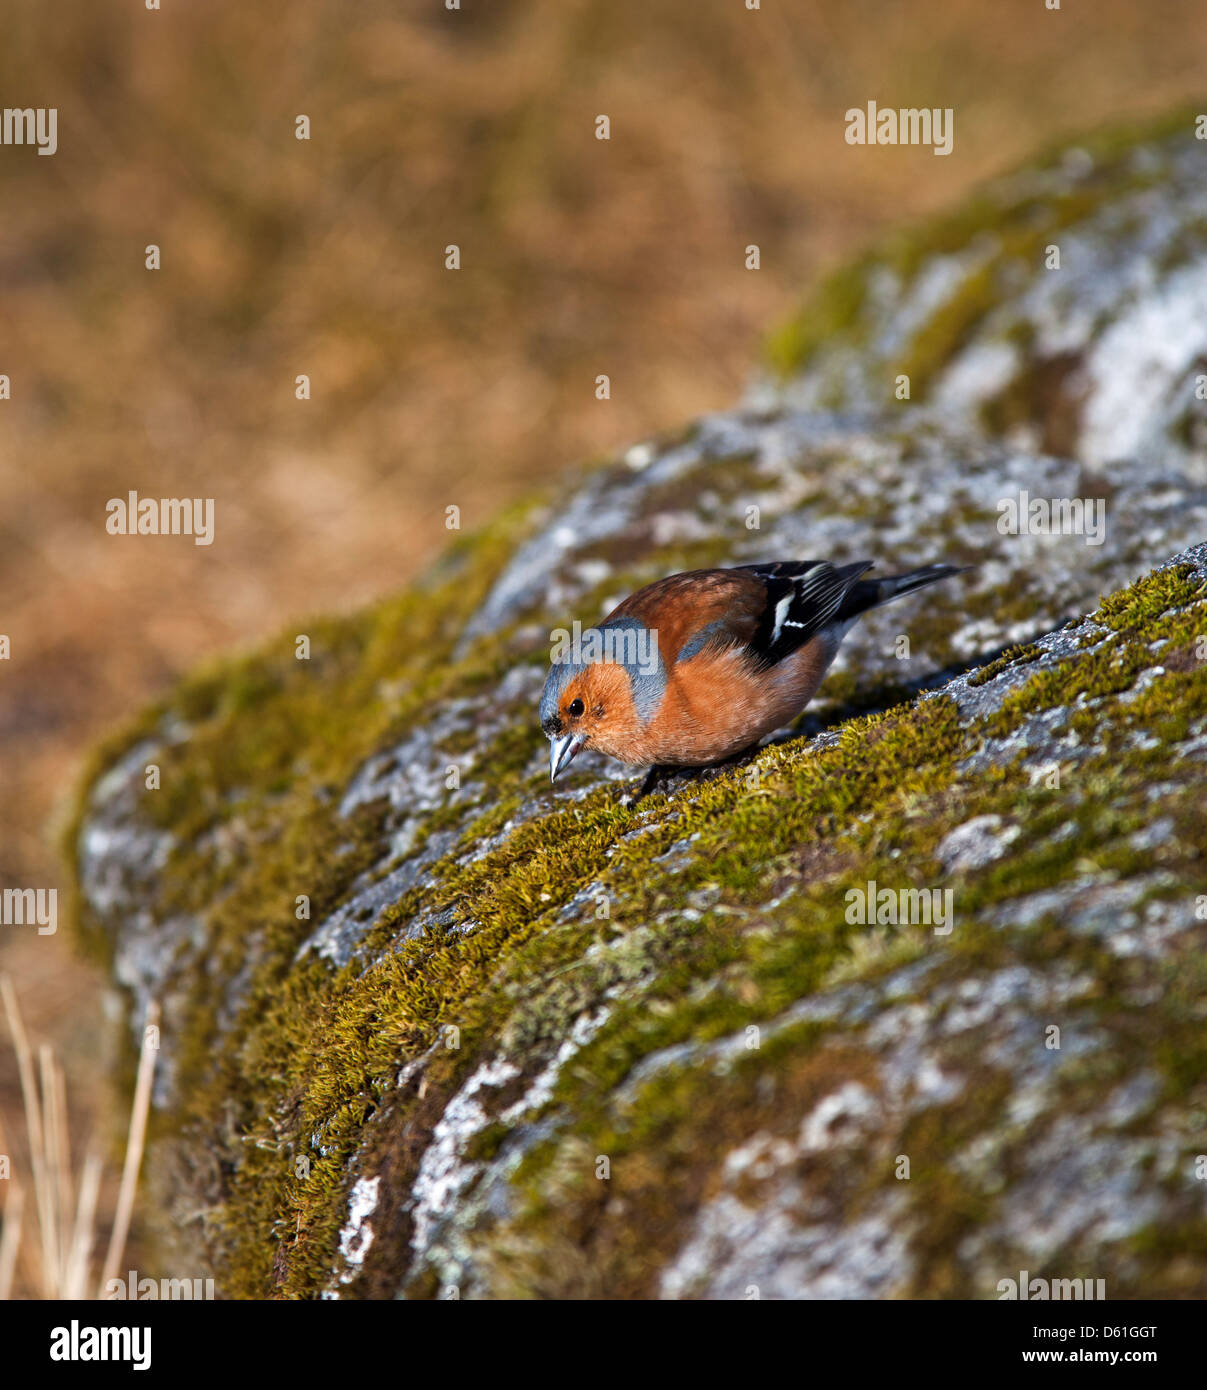 Pinzón macho posado en rocas cubiertas de musgo Foto de stock